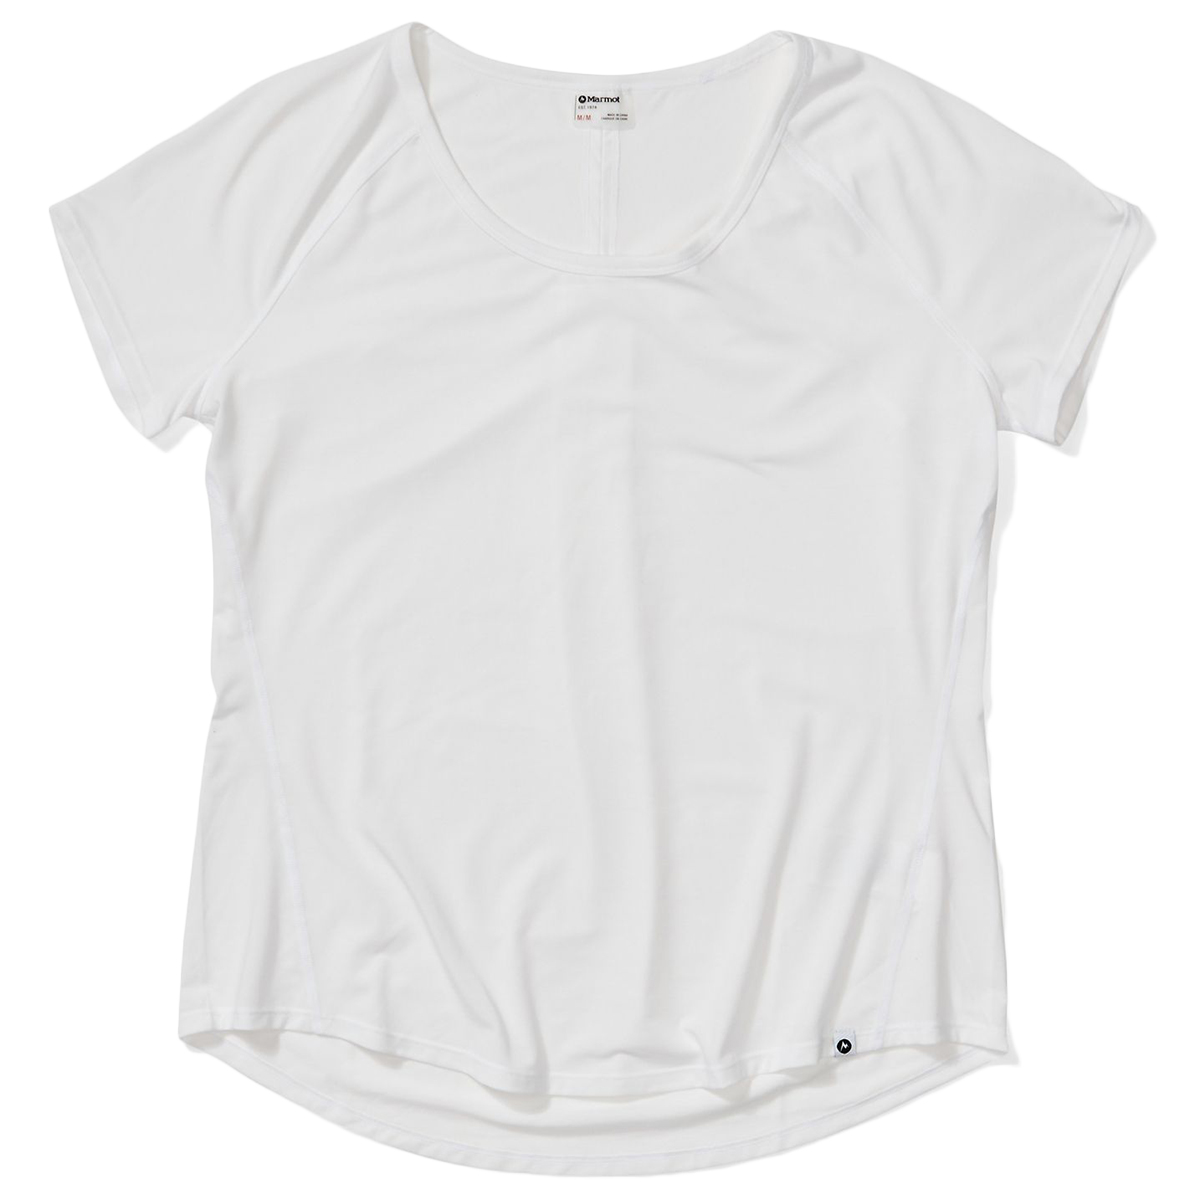 Marmot Women's Neaera Short-Sleeve Shirt - White, M